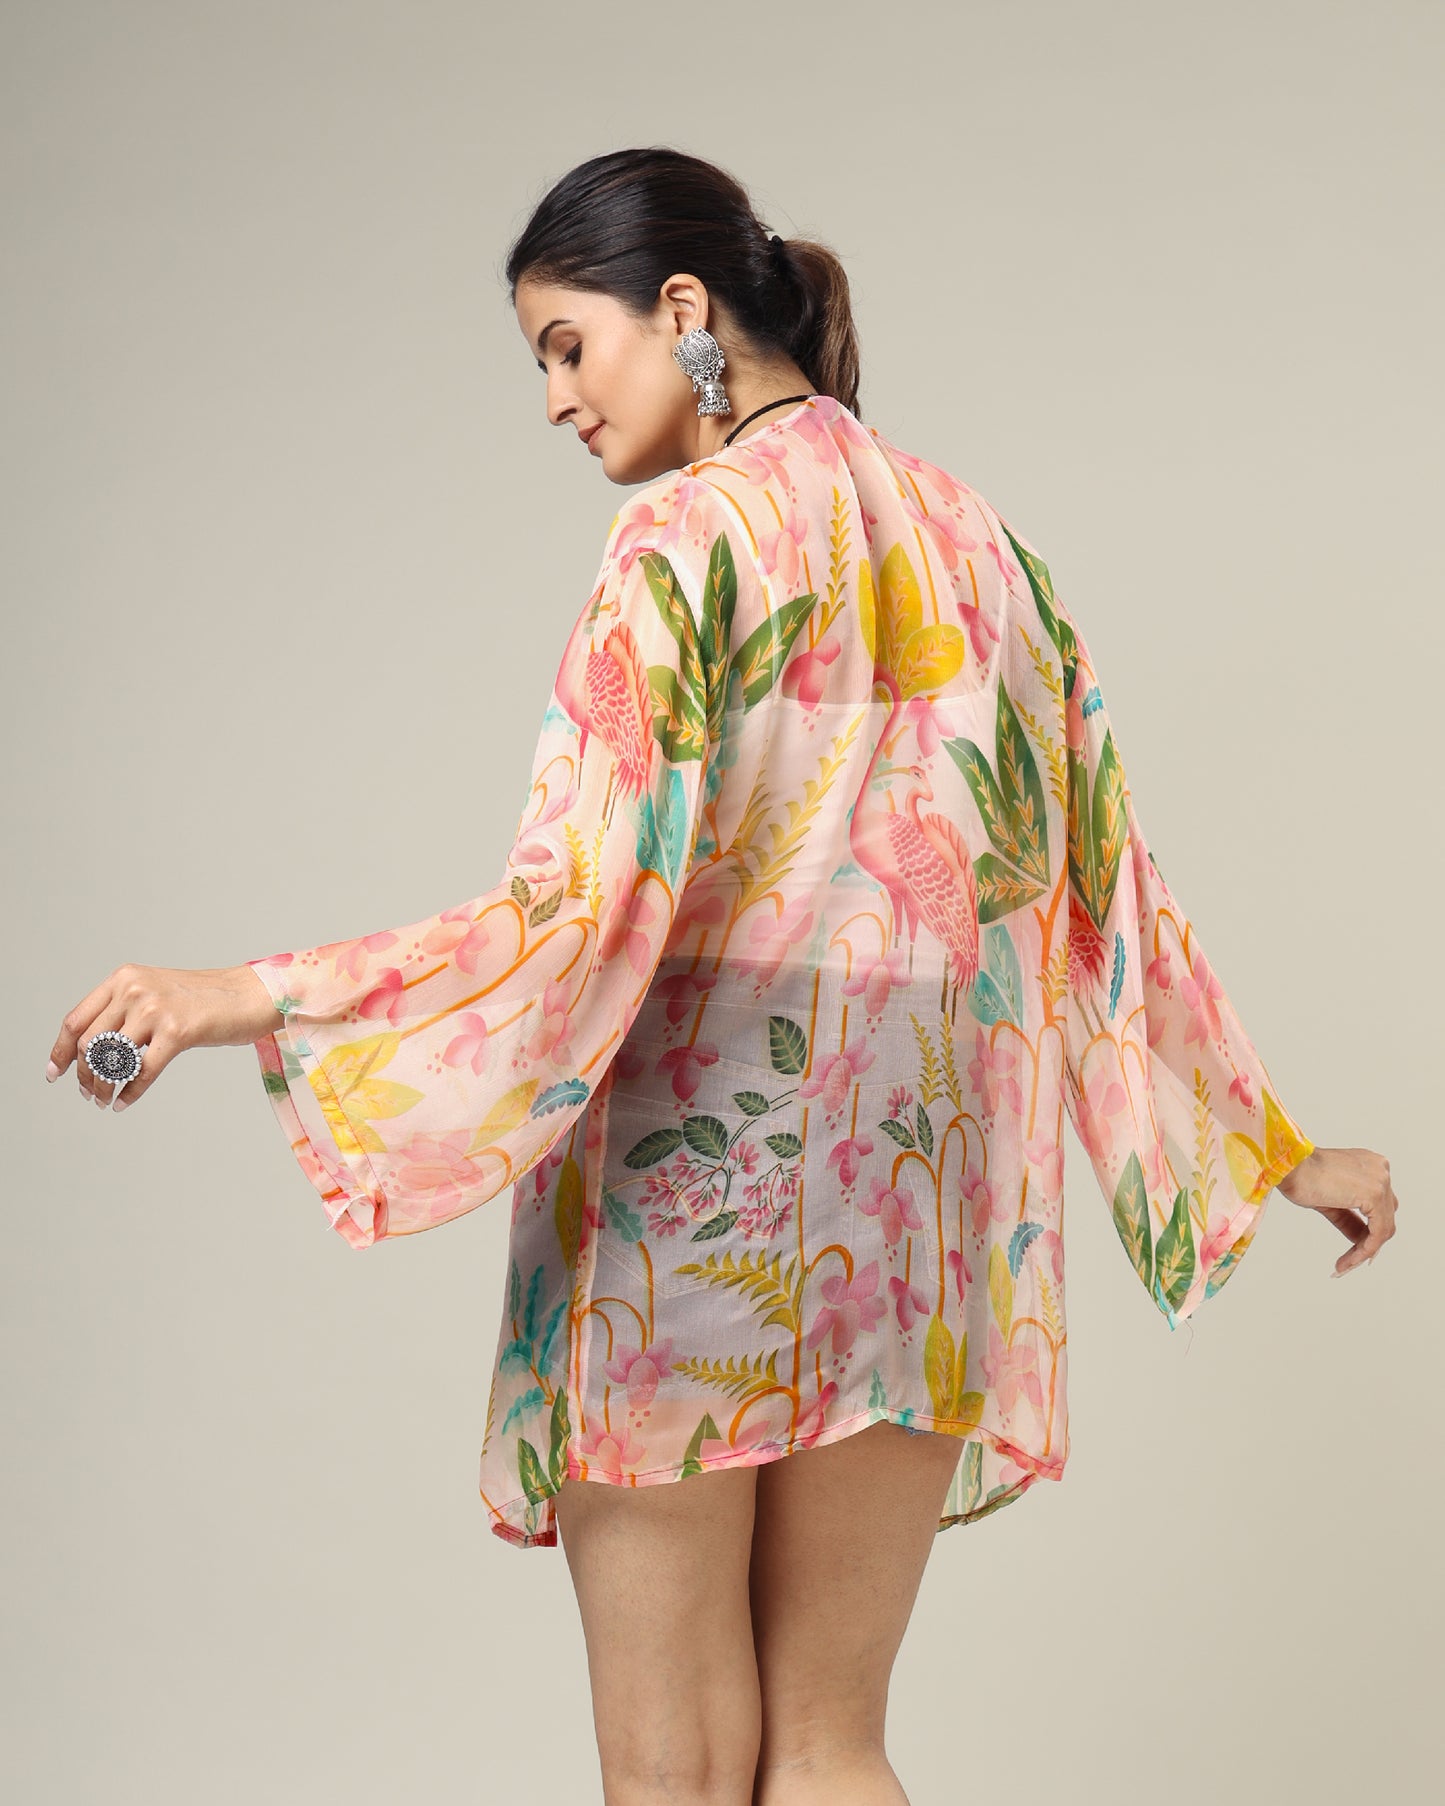 Exclusive Vintage Floral Kimono Shrug For Women